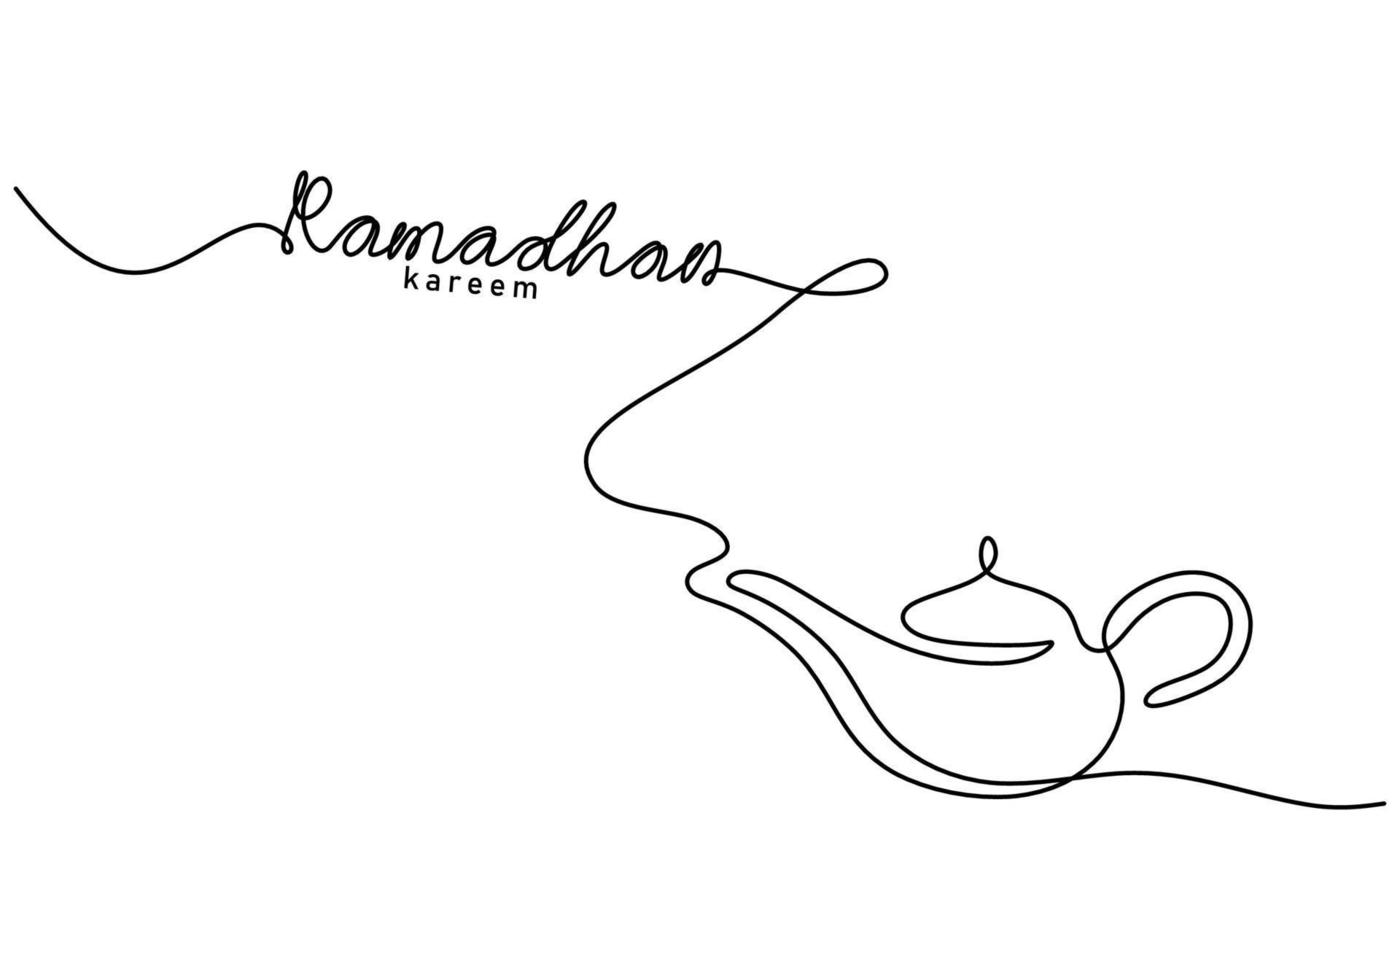 één doorlopende enkele regel ramadan kareem-woord met theepot vector